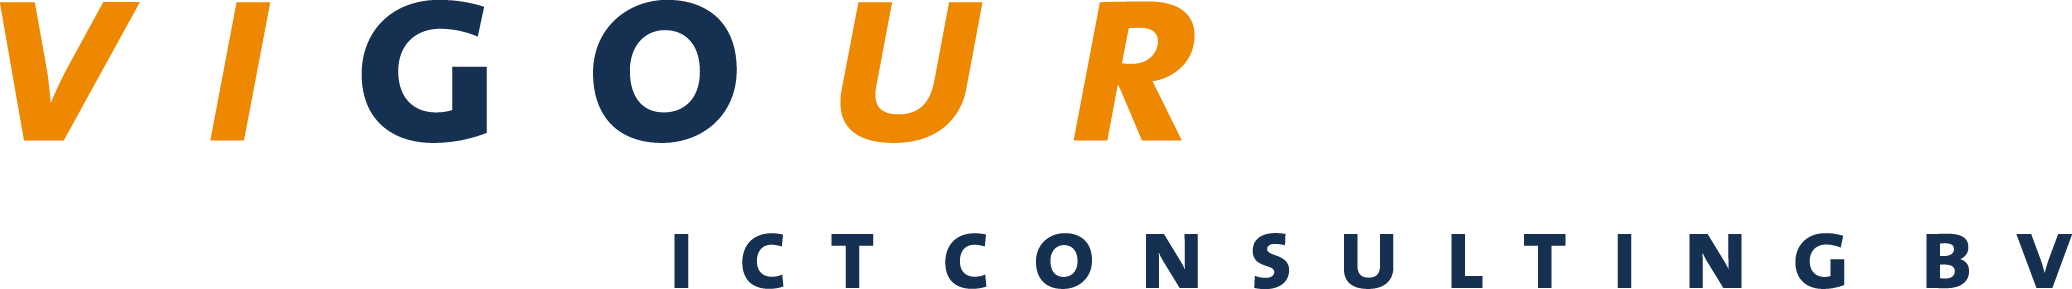 Vigour-Logo